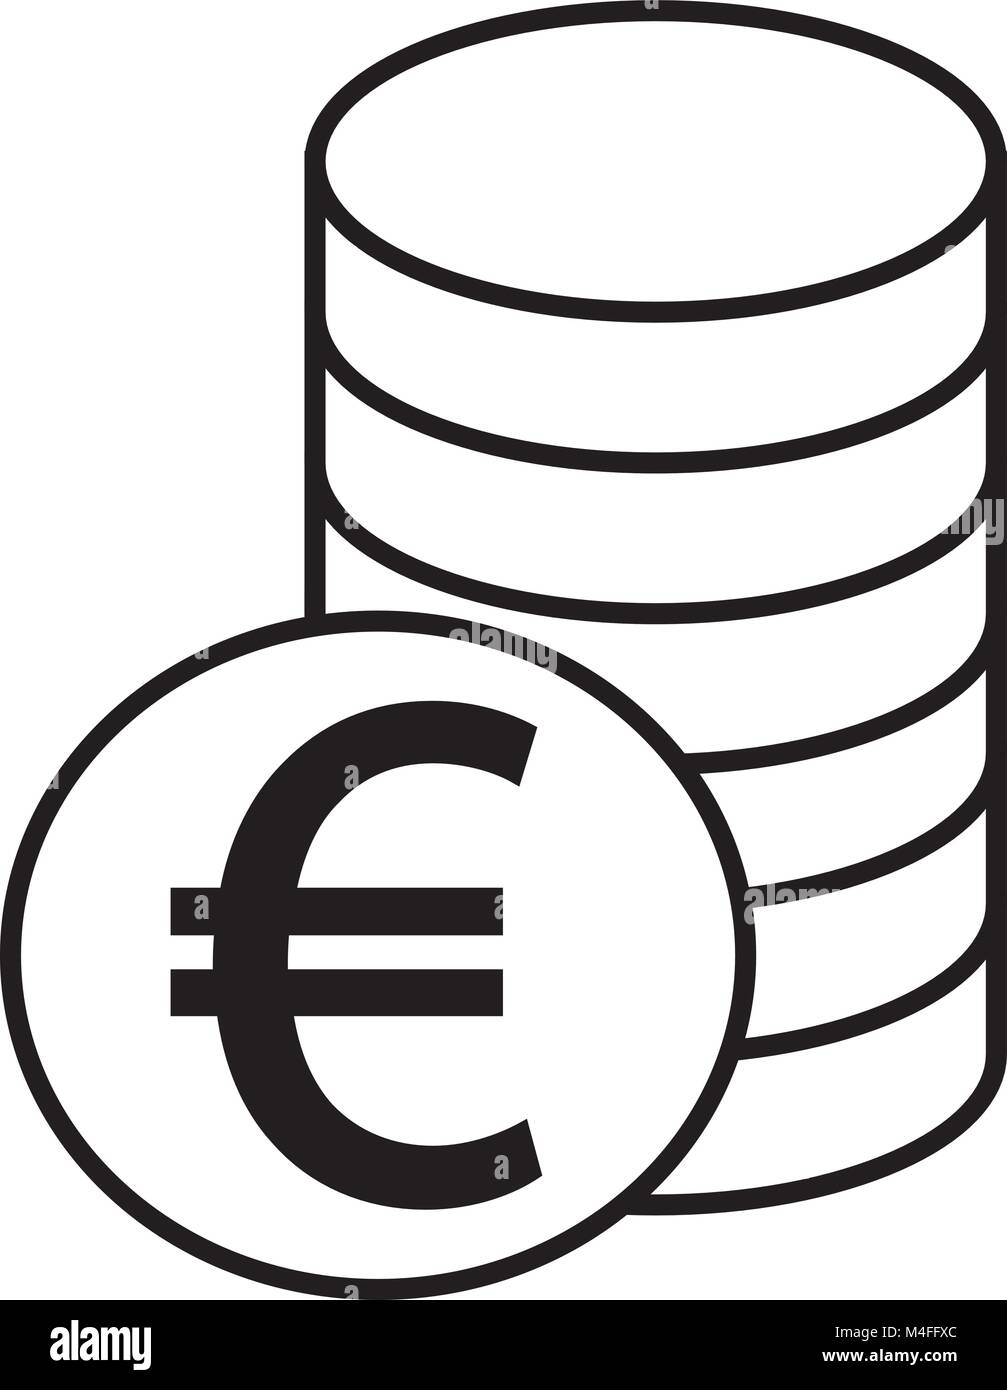 Valuta Euro icona o vettore logo su una pila di monete stack. Simbolo di Unione europea banca, bancarie o Europa finanze dell area dell euro Illustrazione Vettoriale